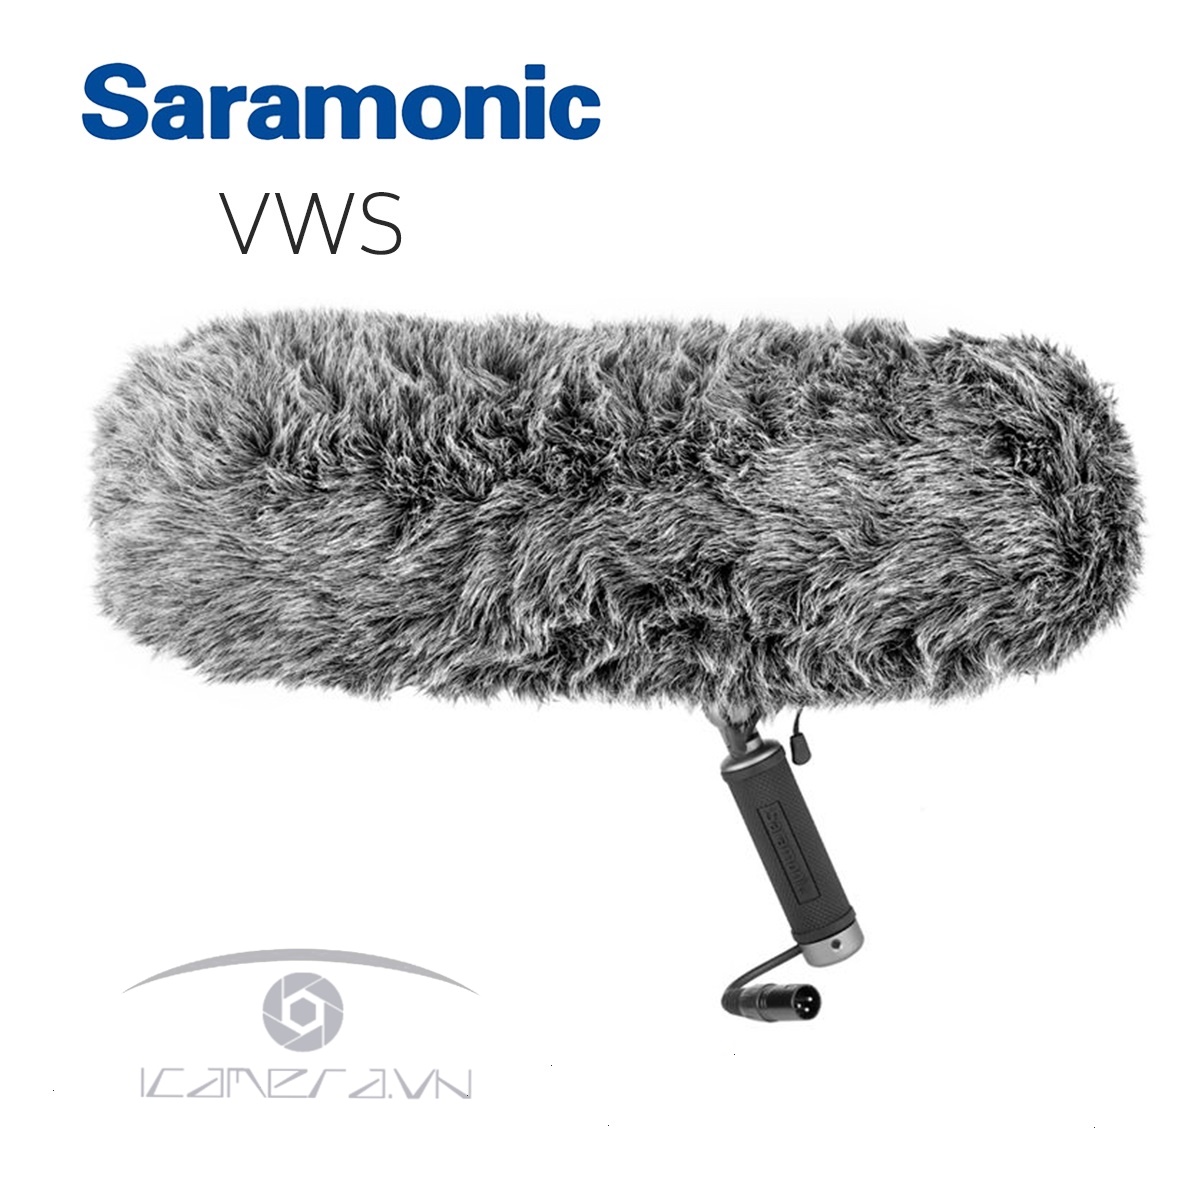 Bộ giá đỡ và lọc gió chuyên nghiệp Saramonic VWS